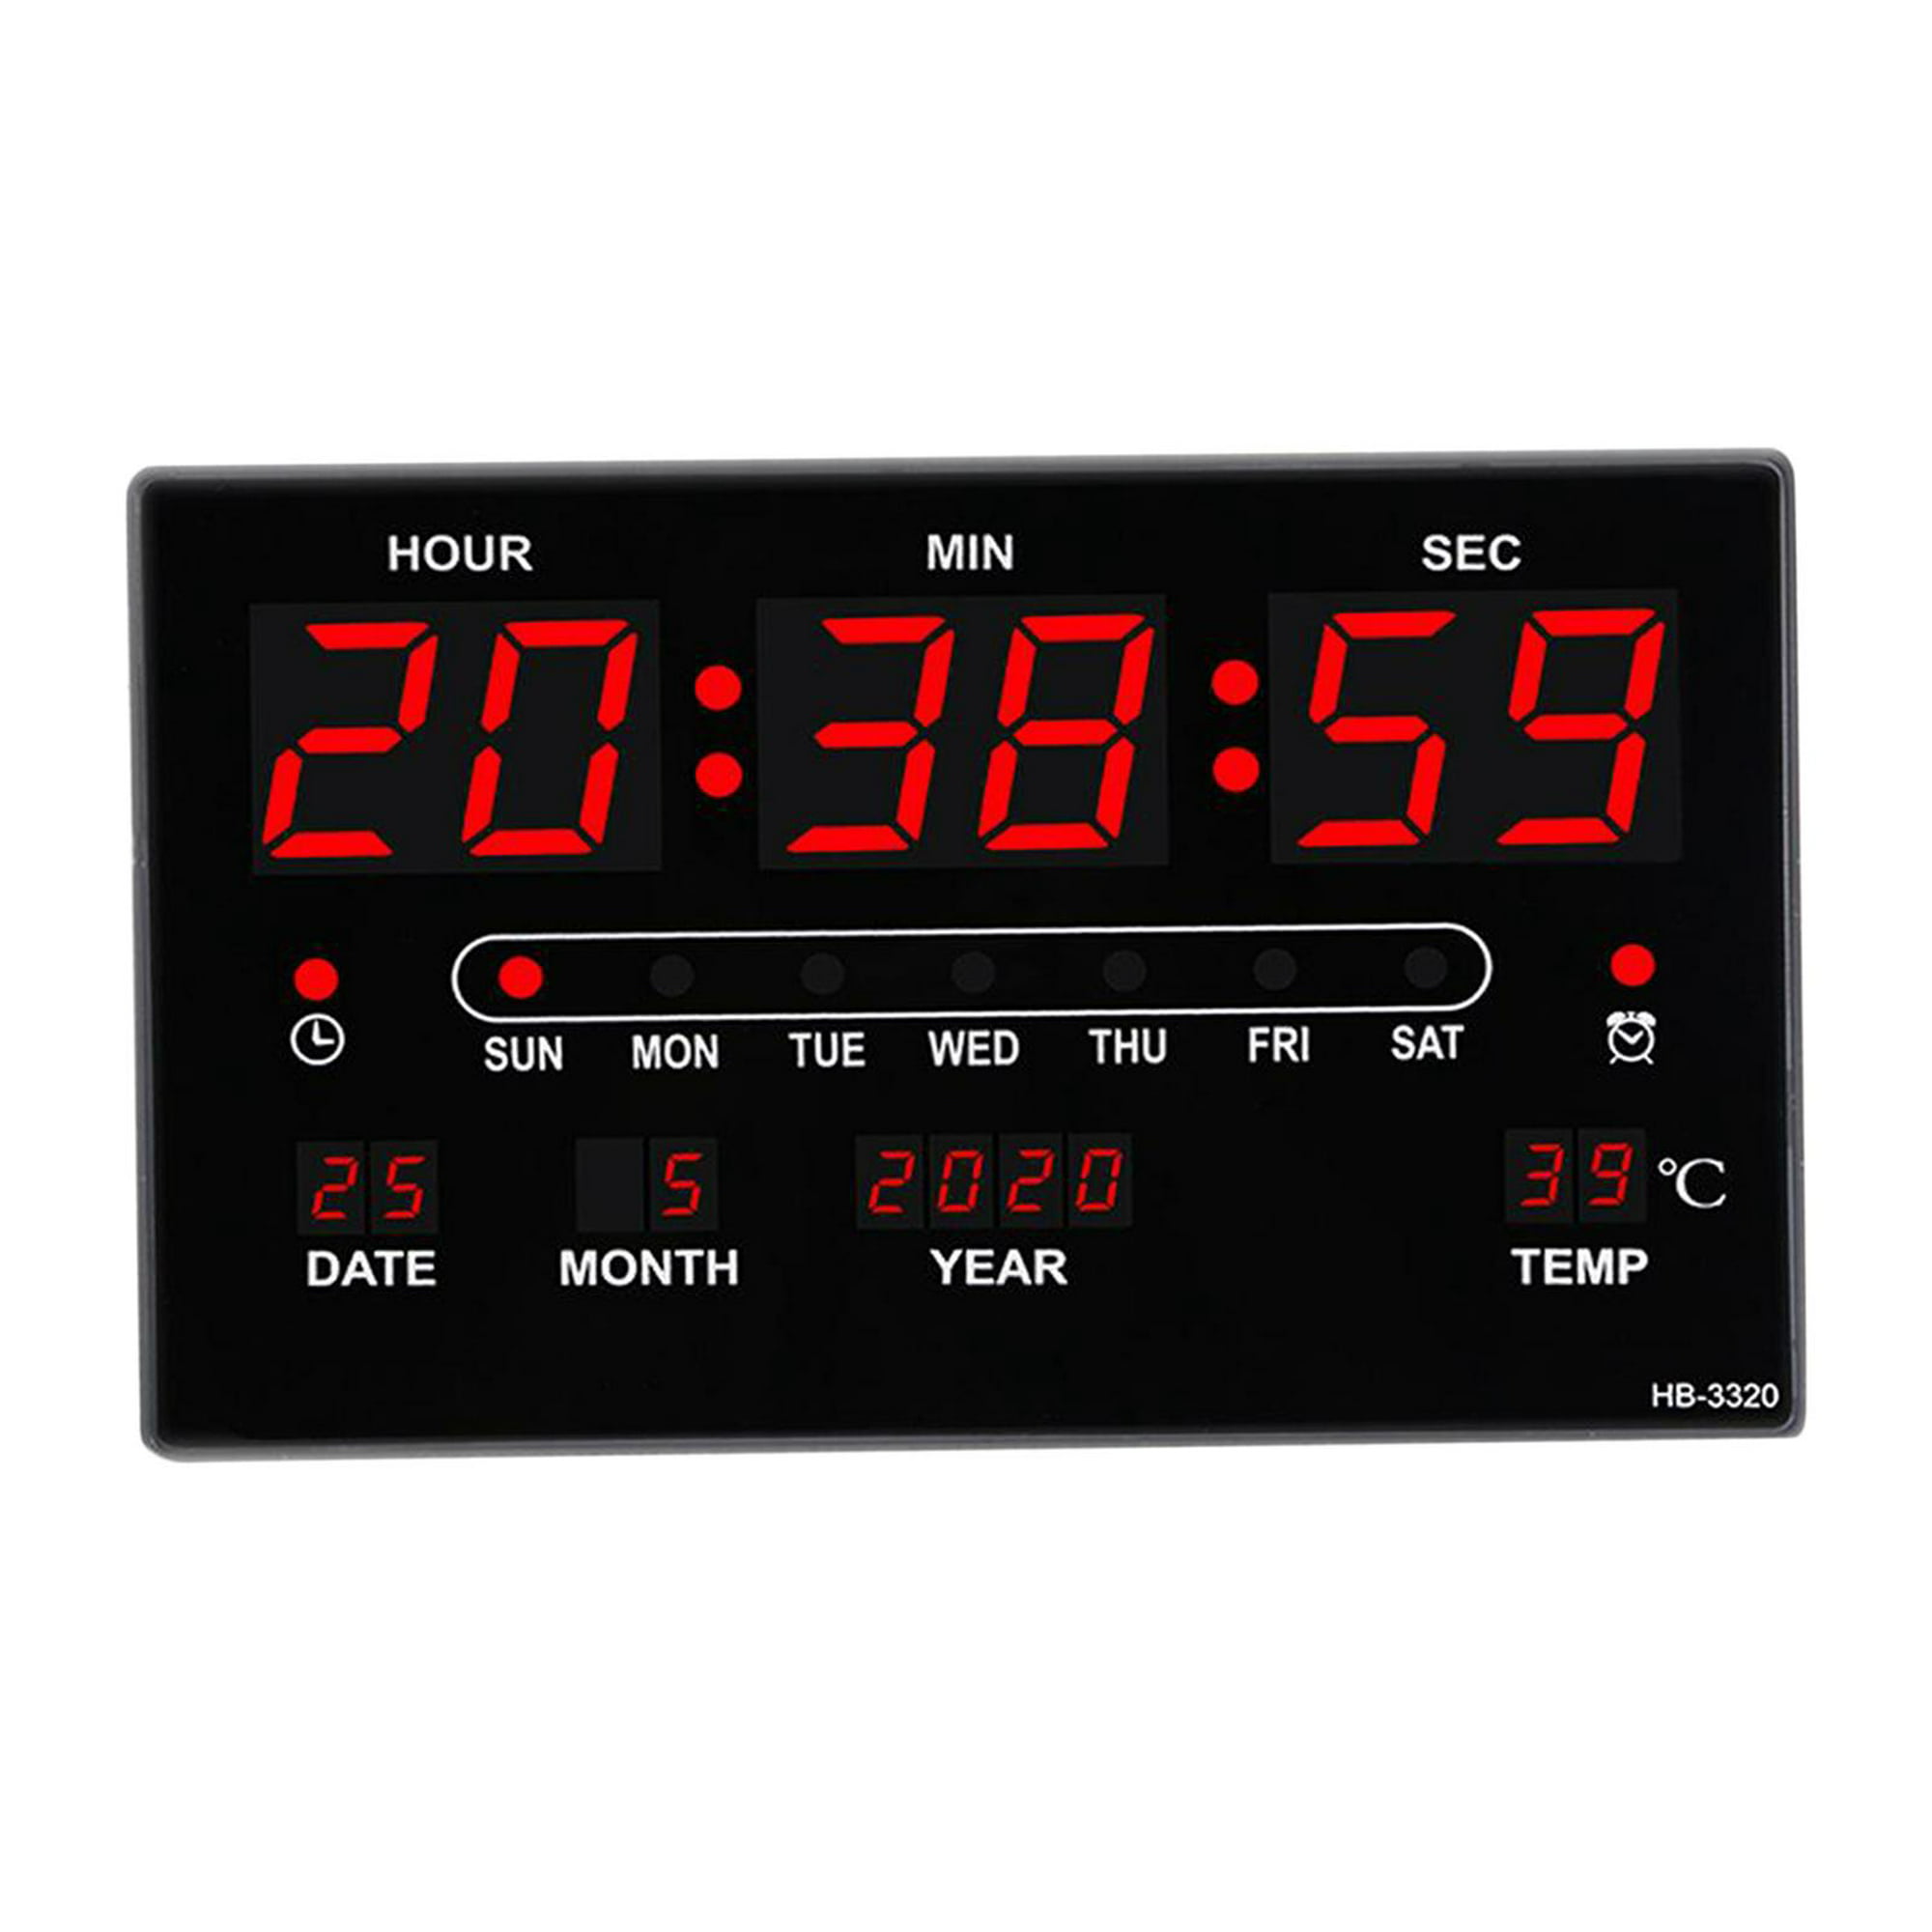  NTIYOU Reloj de pared grande LCD Digital despertador, fecha y  fecha, calendario digital, reloj de día, reloj de pared digital grande (9.3  * 6.5 * 1.0 in) sala de estar : Hogar y Cocina